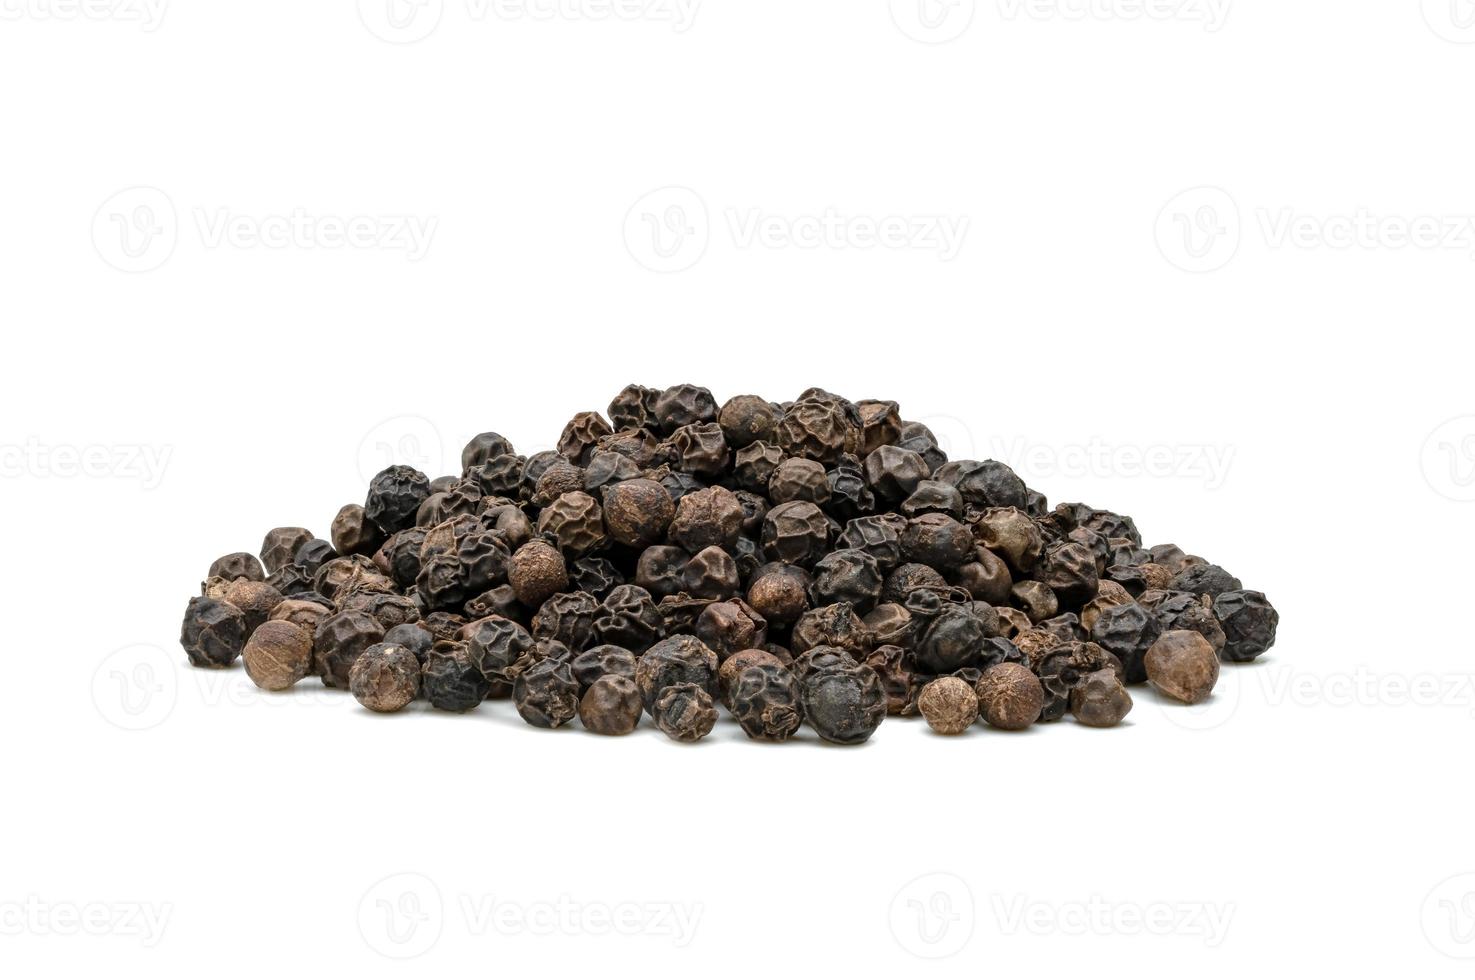 pila de pimienta negra o semillas de granos de pimienta negra aisladas en fondo blanco. foto